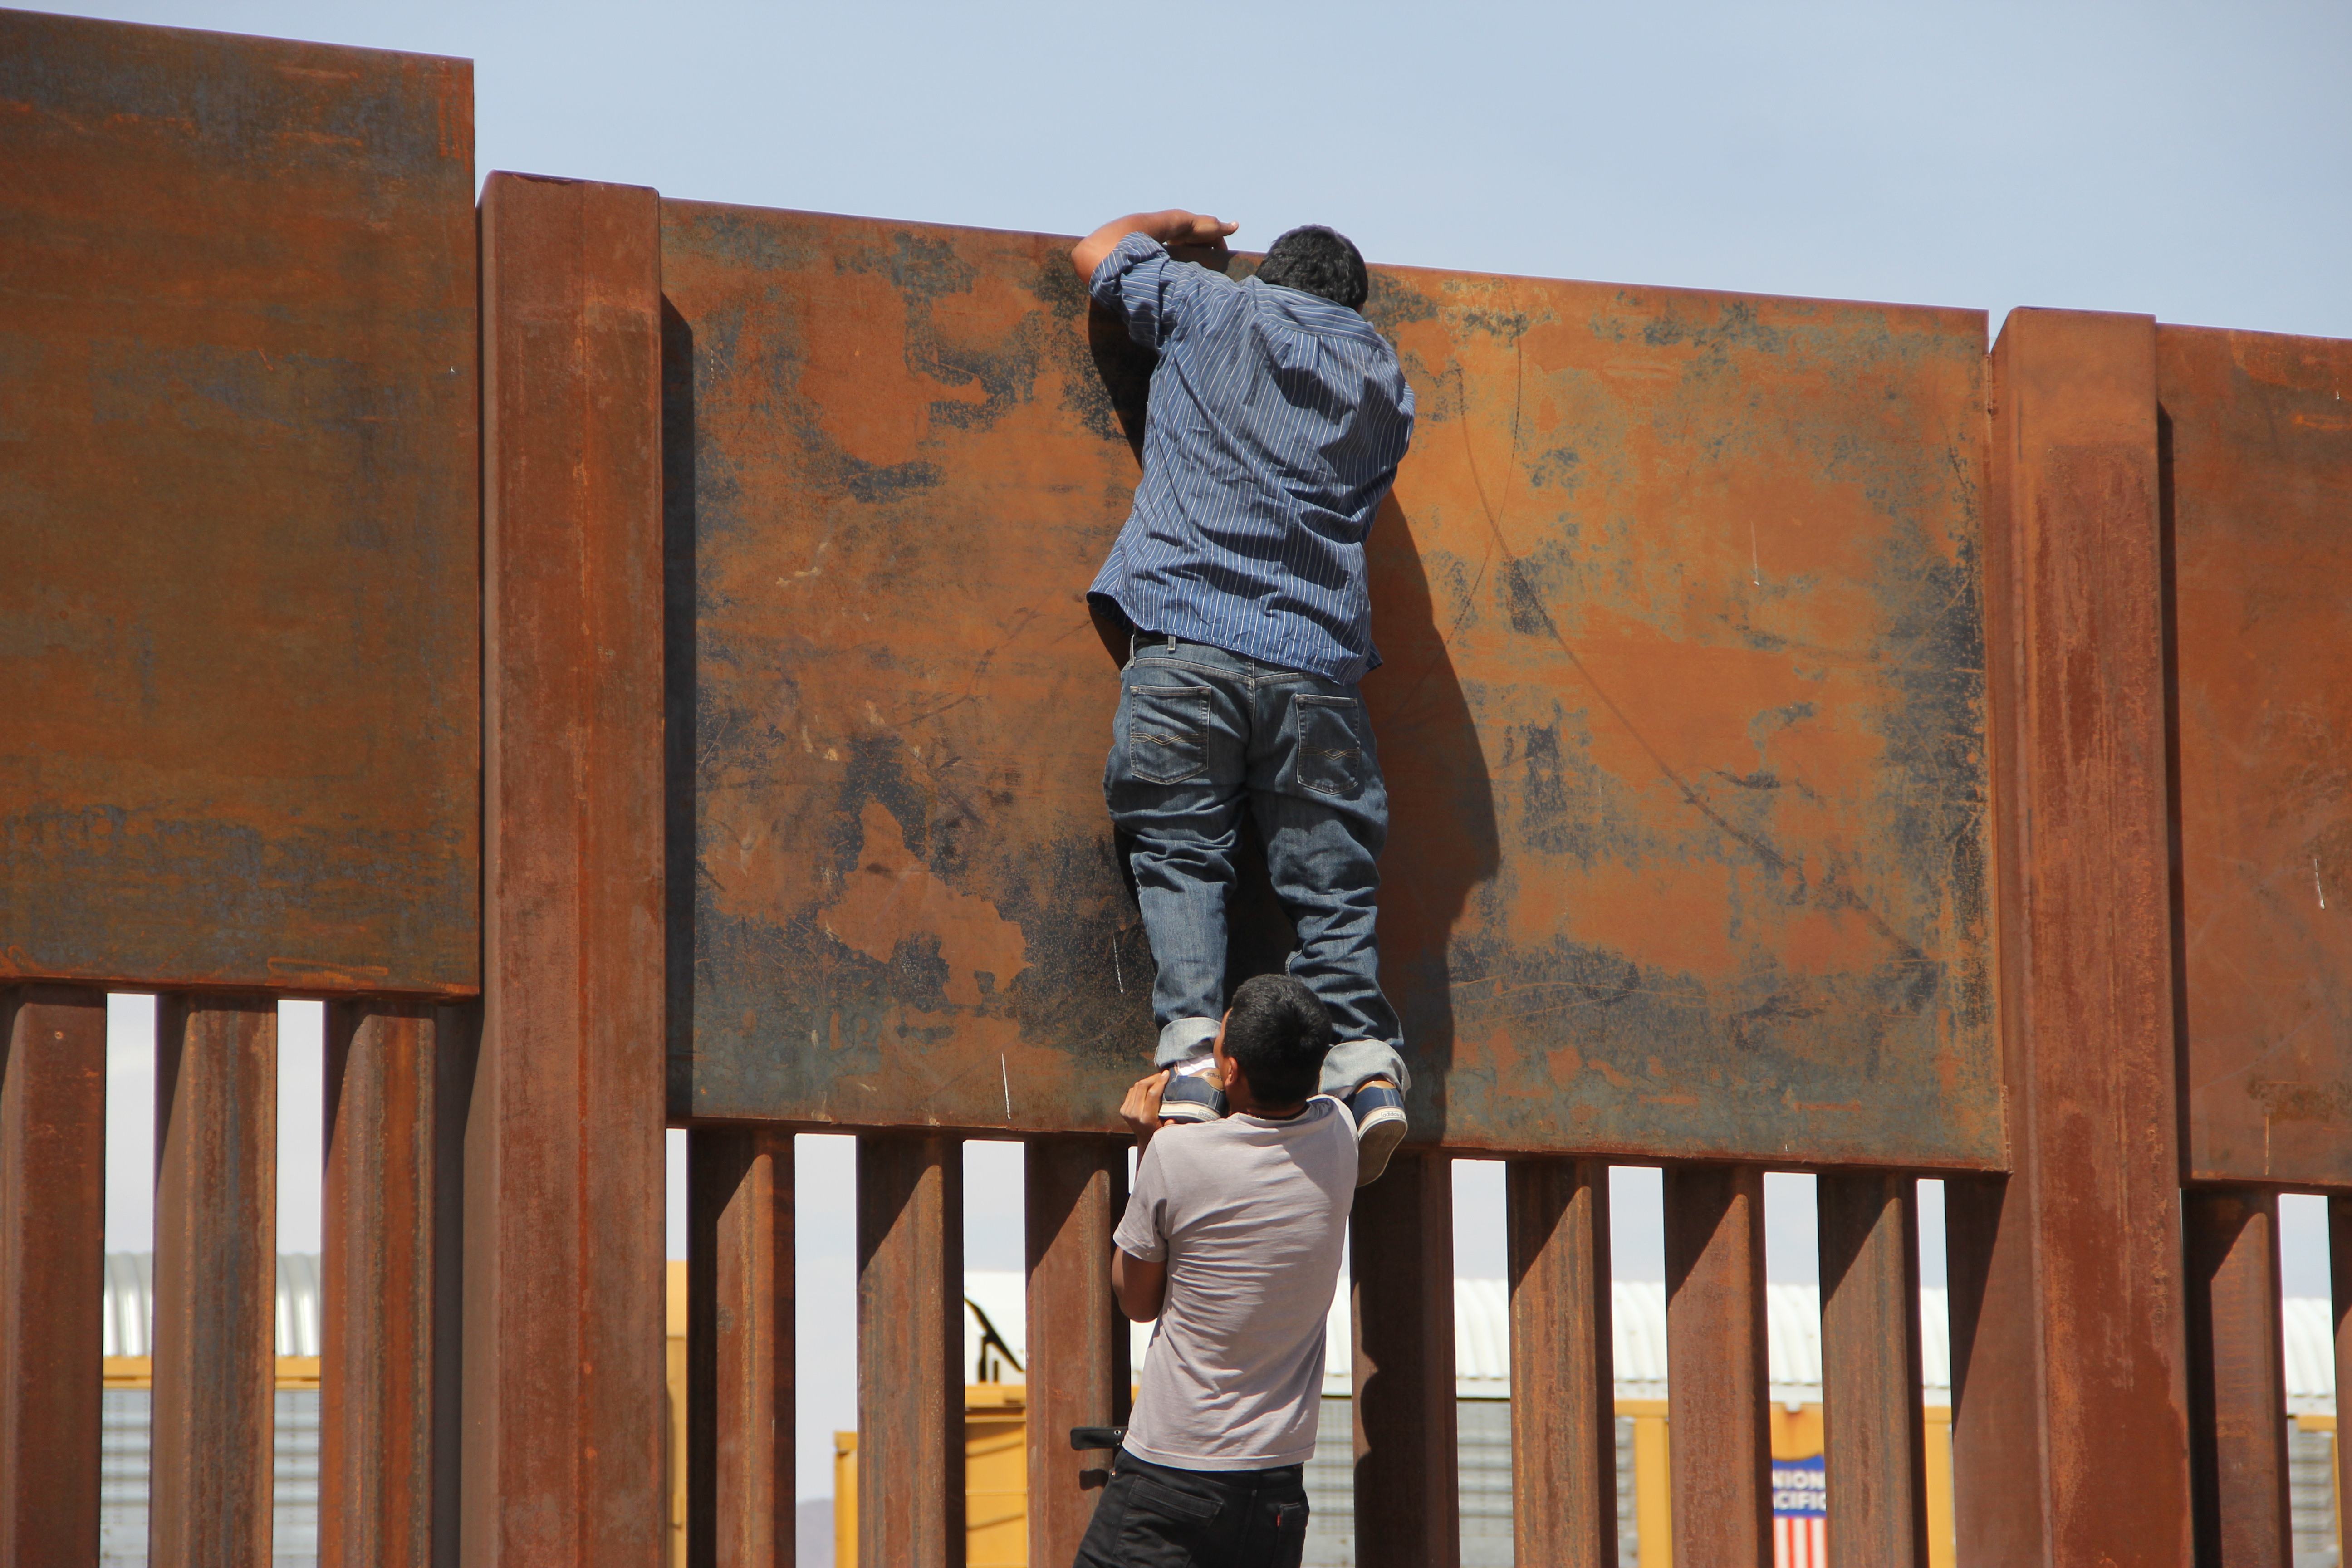 أحد المهاجرين يجتاز الجدار الحدودى بين الولايات المتحدة والمكسيك